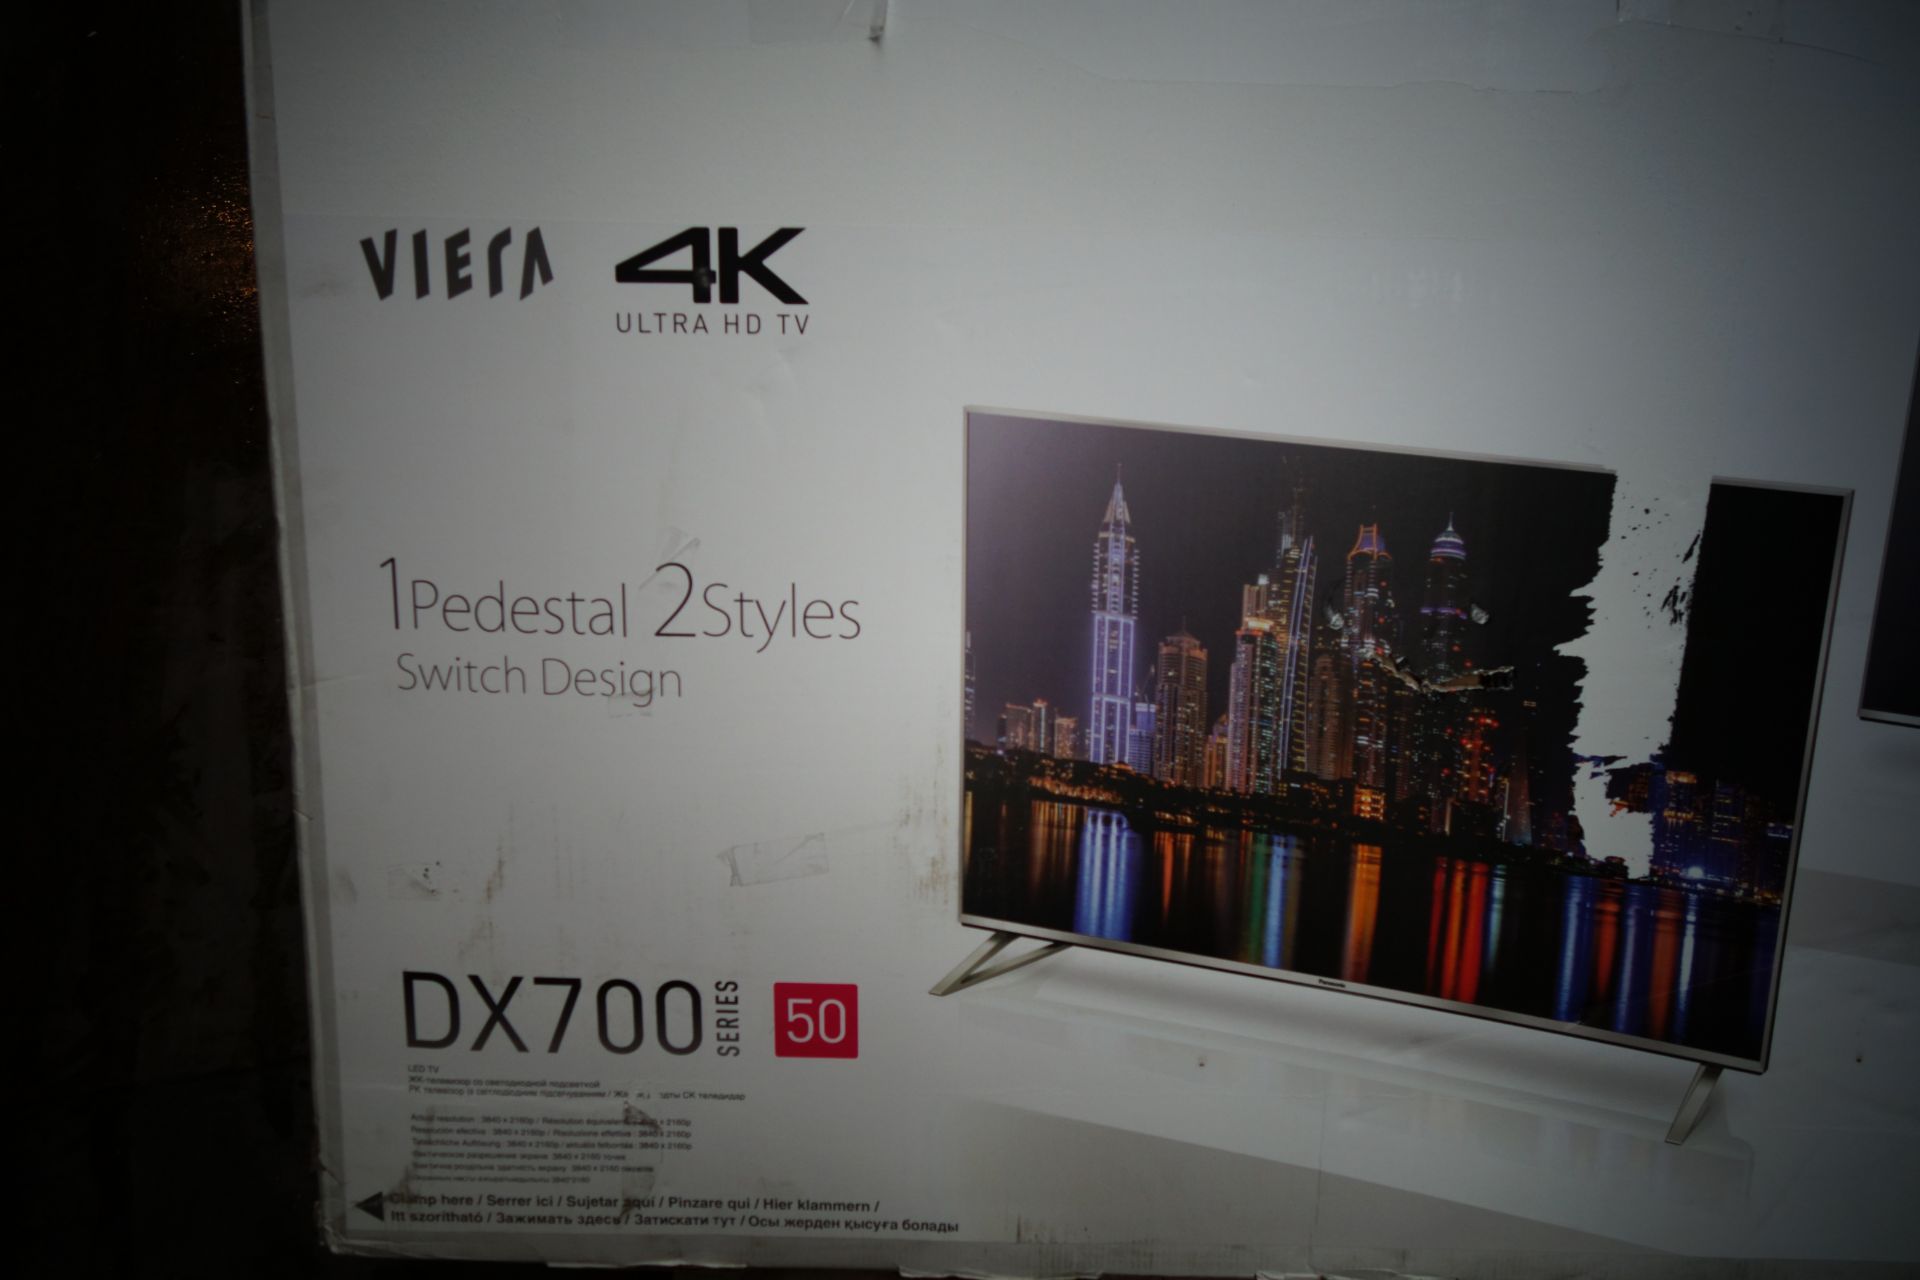 (T38) Panasonic DX700B 50 Inch 4K UHD Smart LED TV. RRP £679. The Panasonic DX700B 50'' Smart LED TV - Image 2 of 3